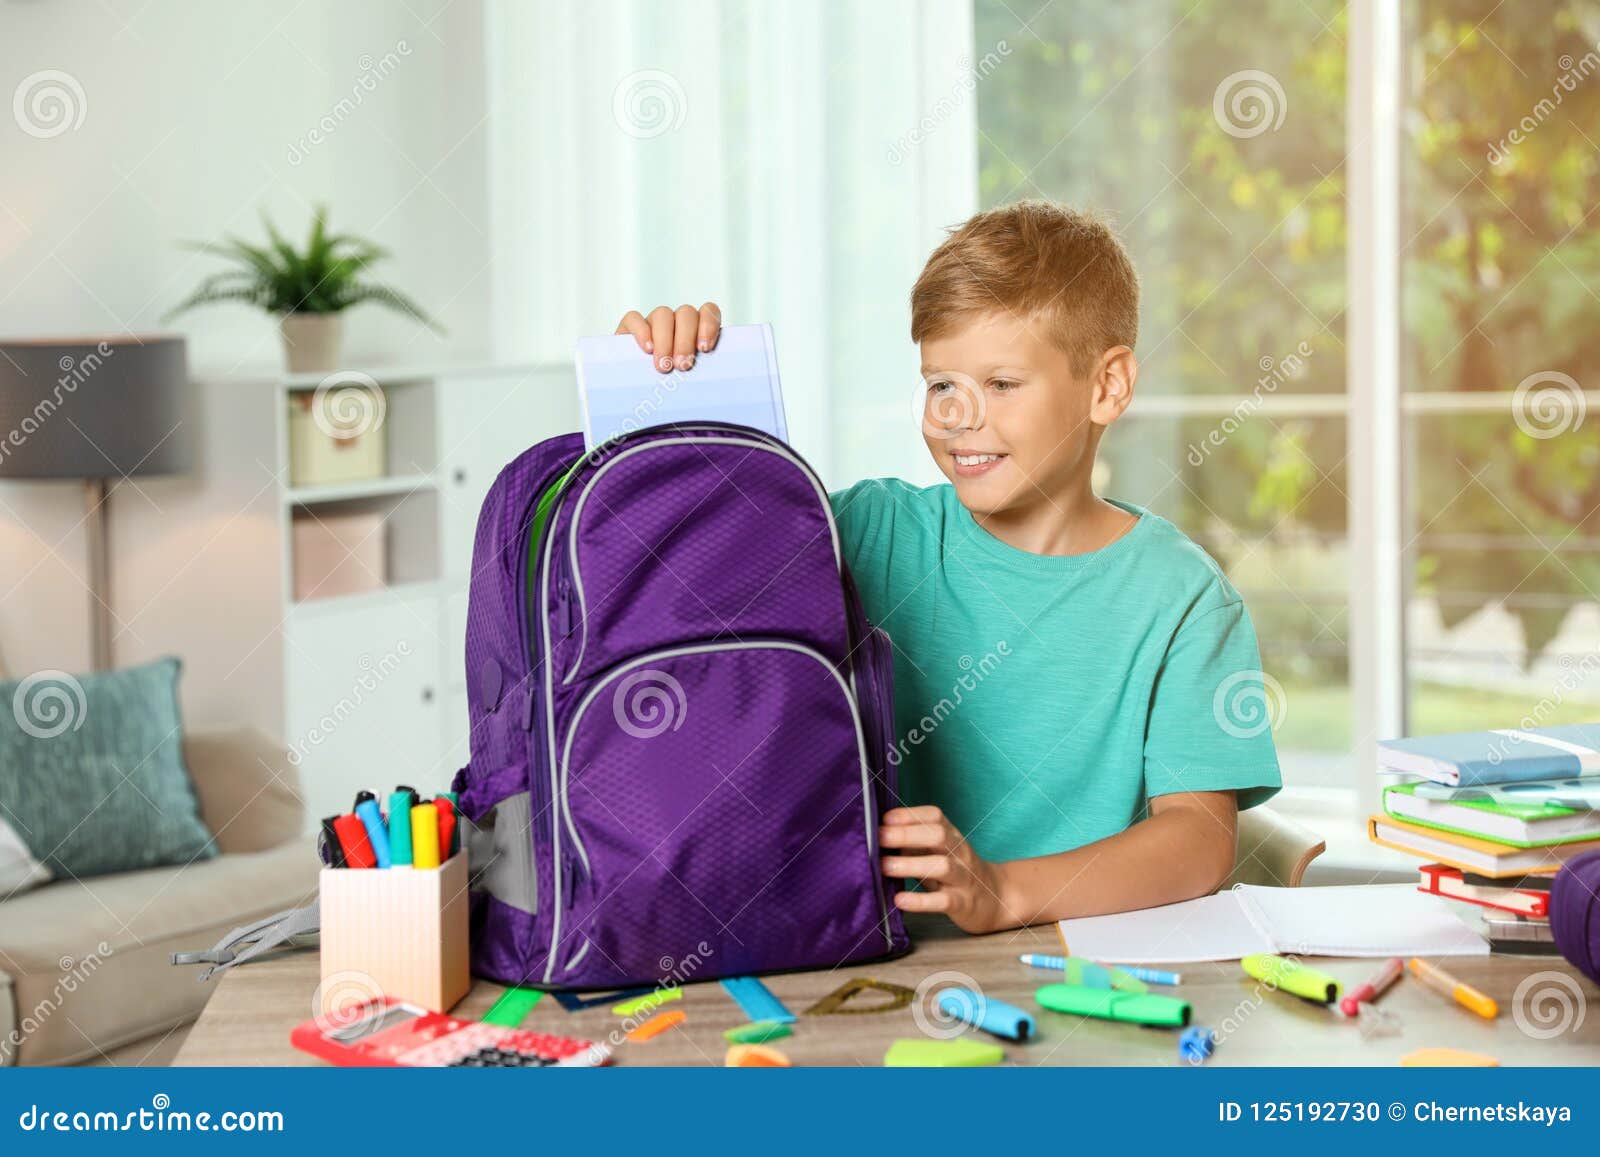 Сложив в портфель. Мальчик собирается в школу. Ребенок собирает портфель в школу. Мальчик собирает портфель в школу. Ребенок собирает рюкзак.